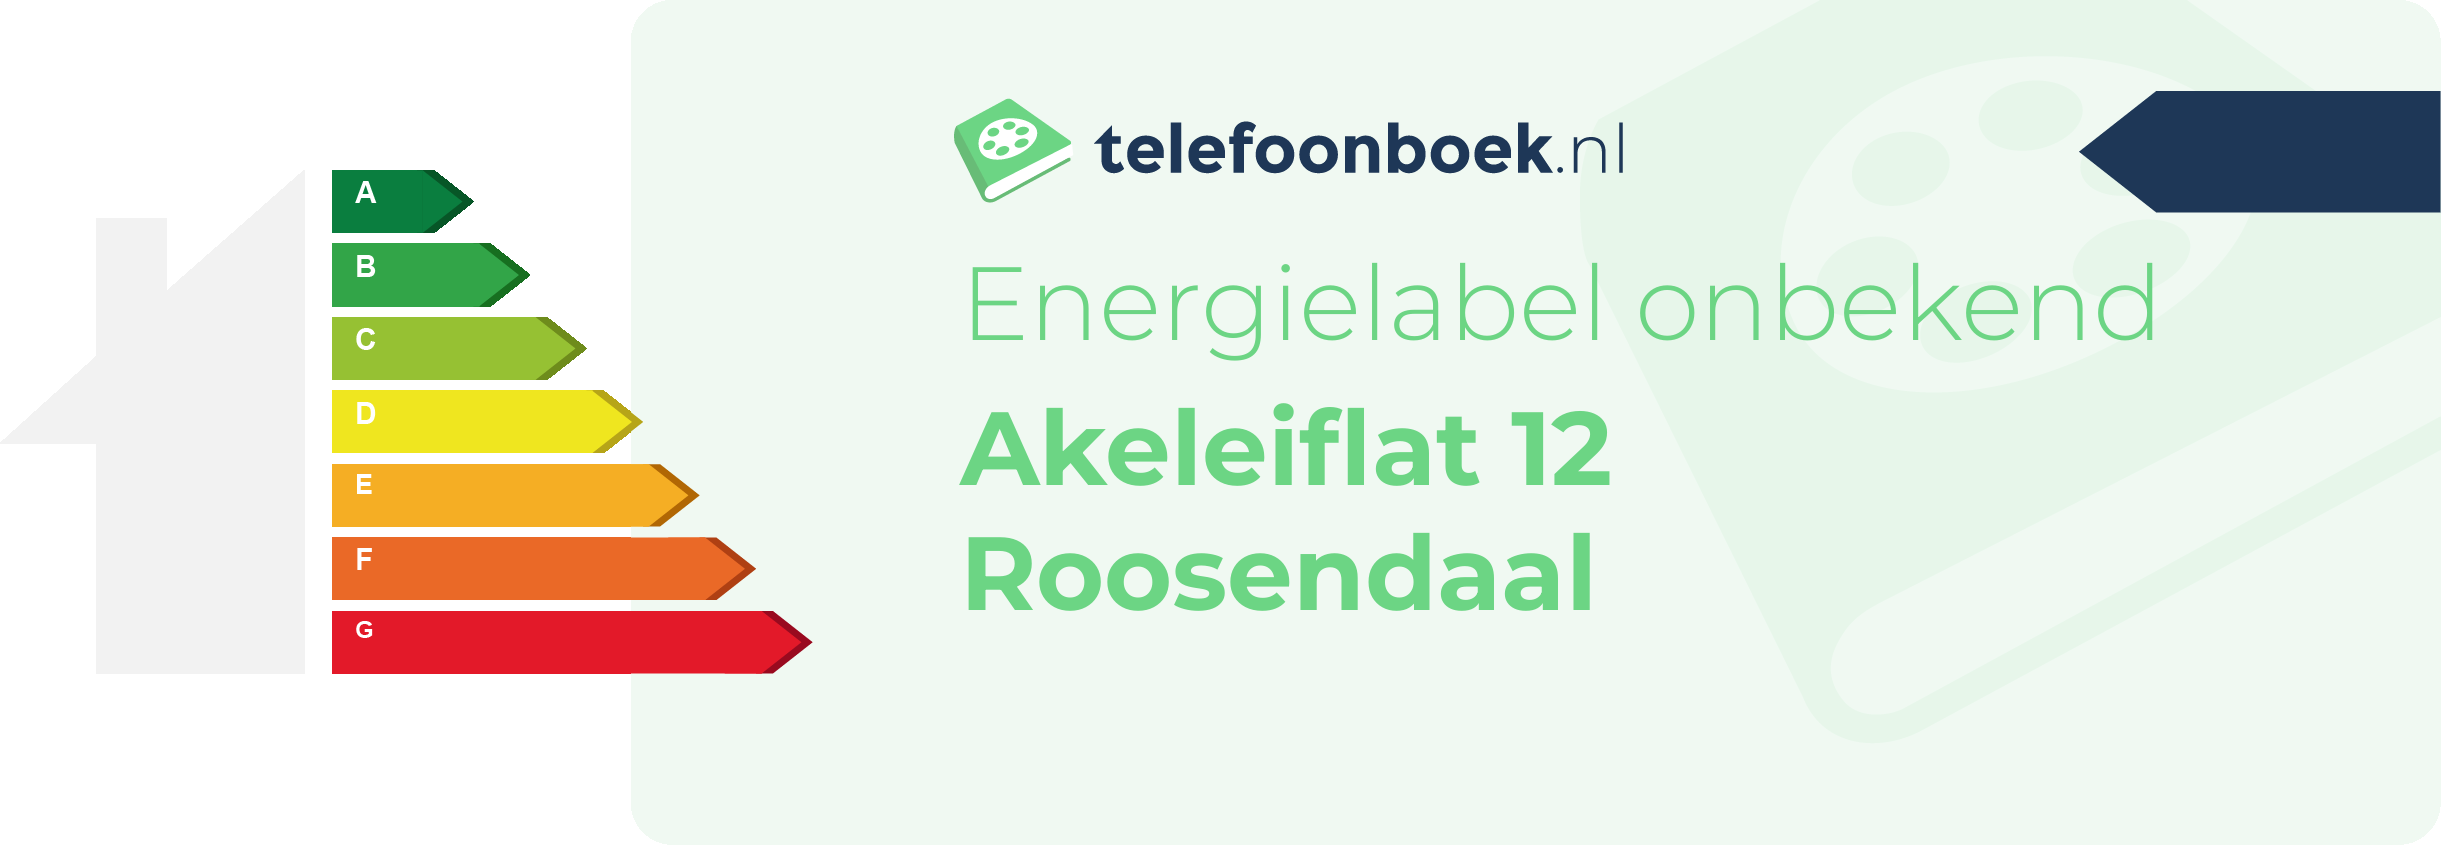 Energielabel Akeleiflat 12 Roosendaal